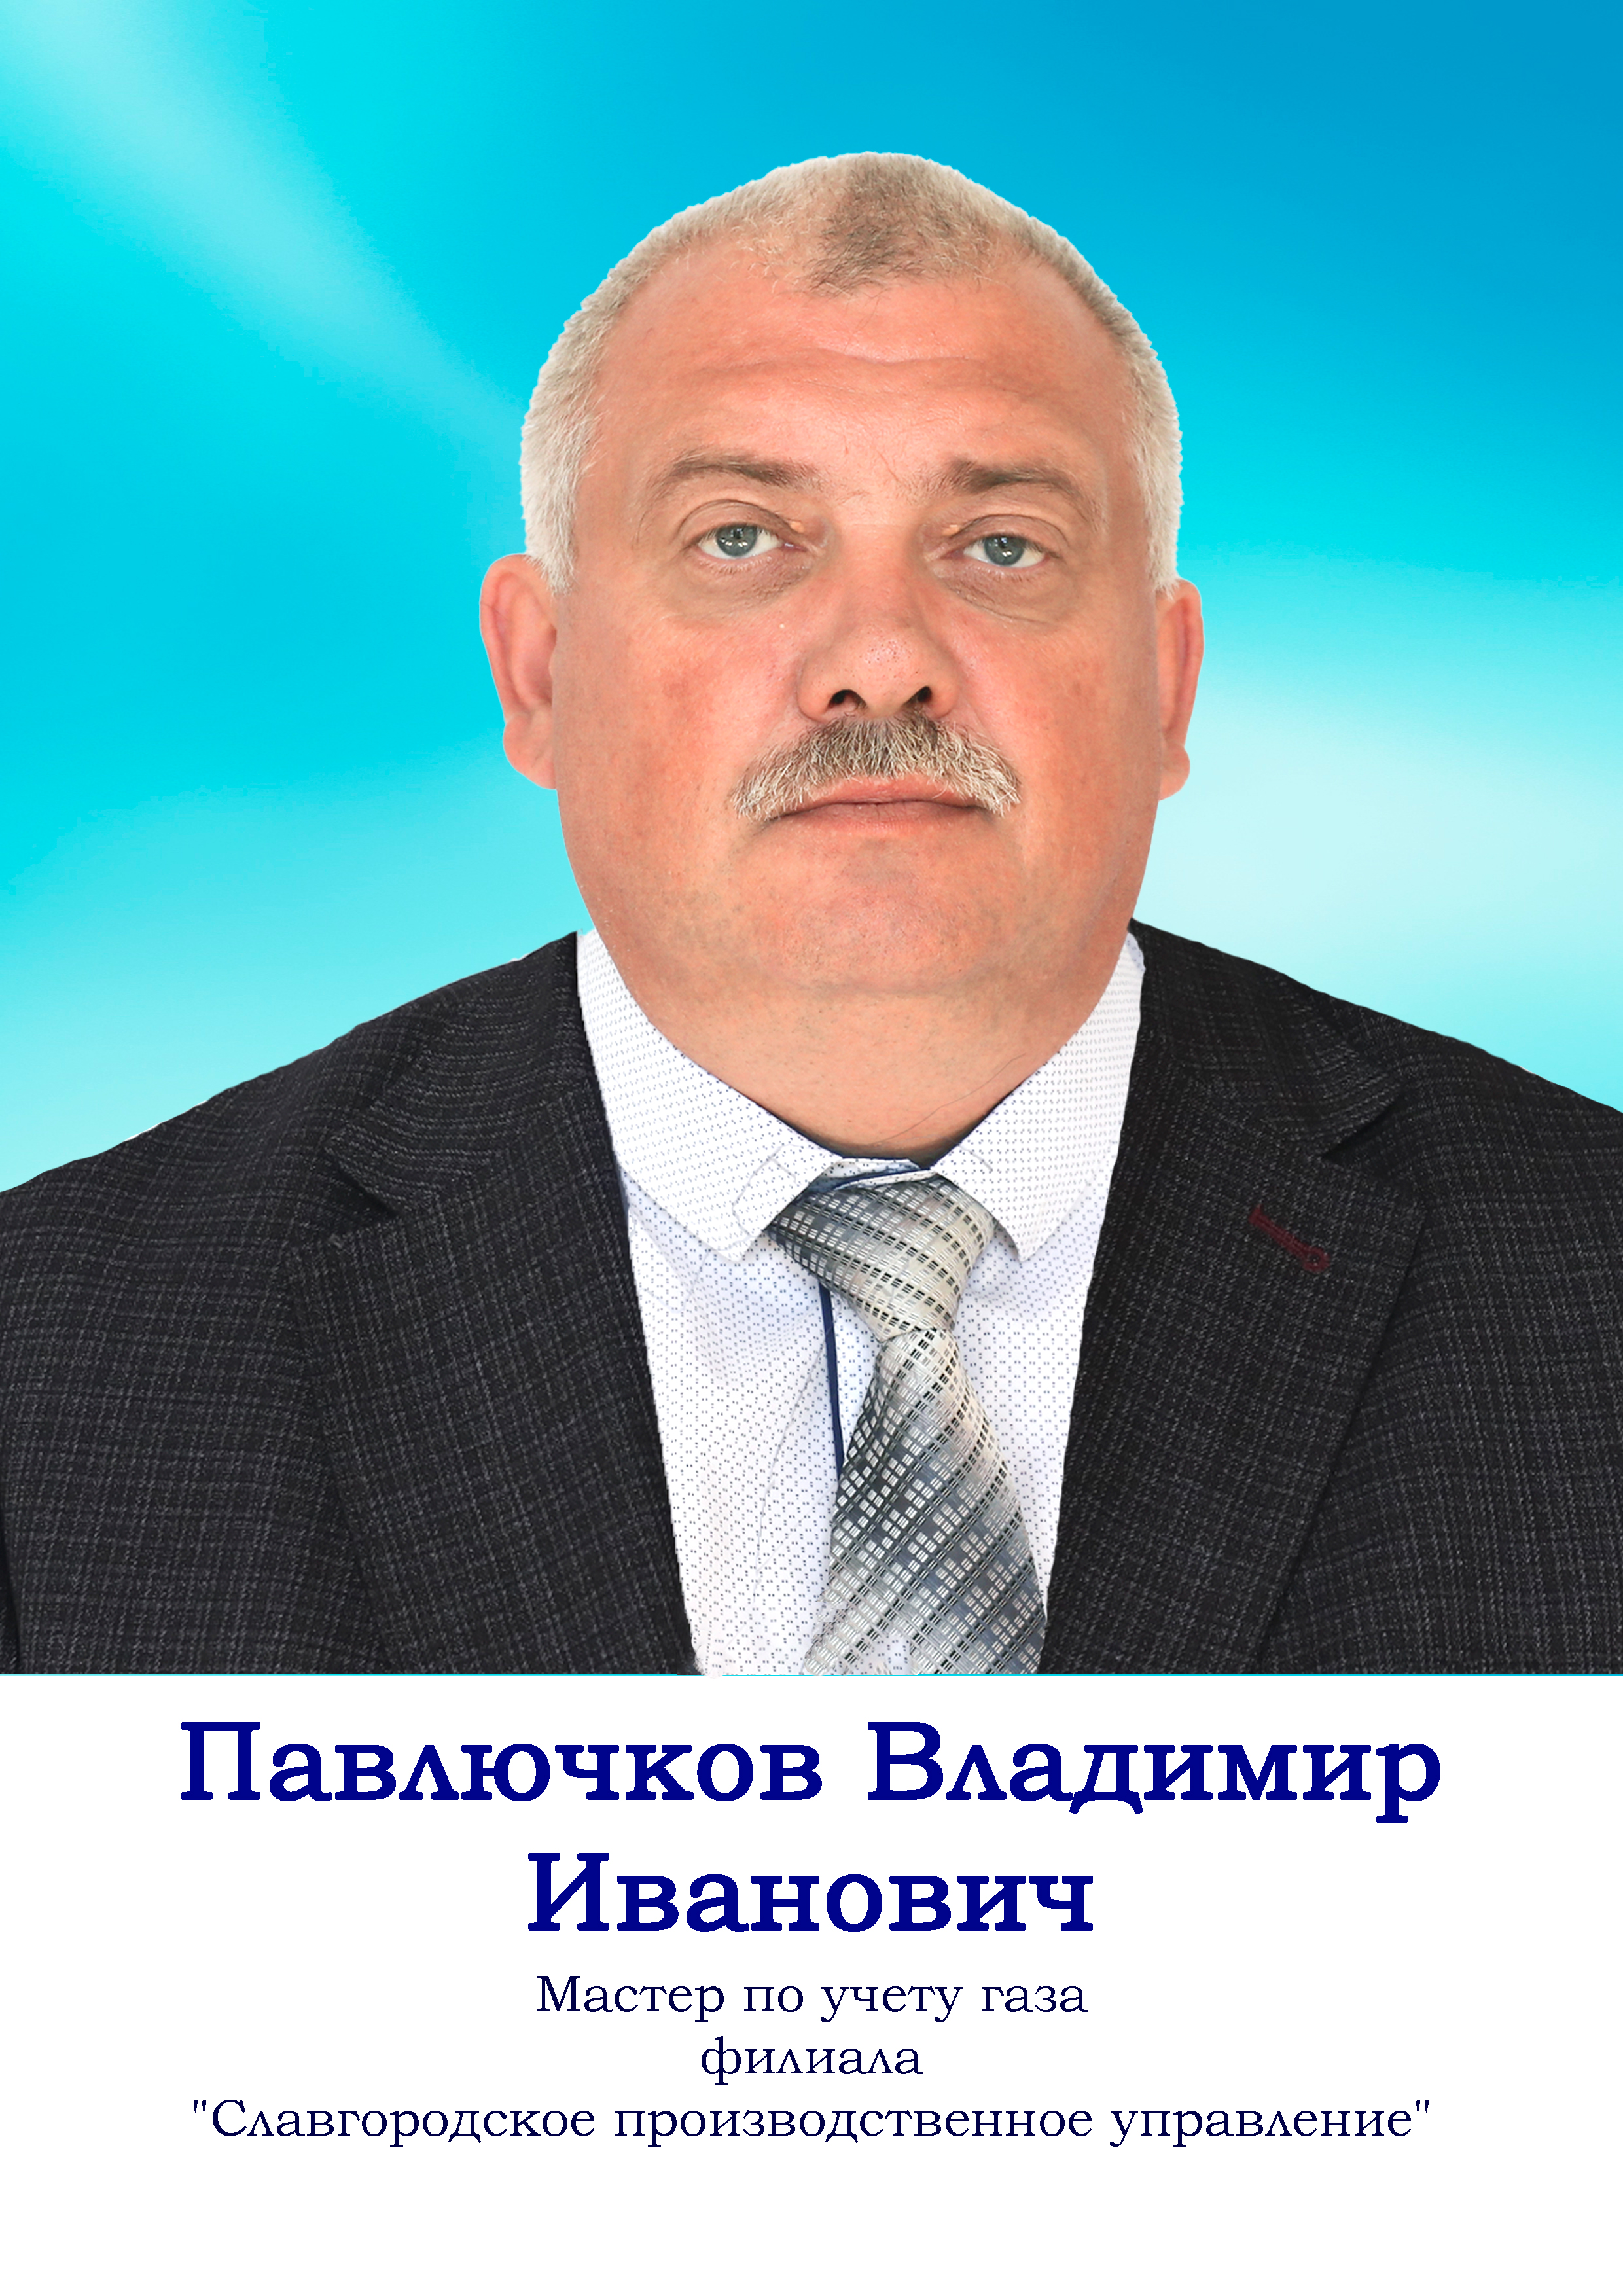 Павлючков Владимир Иванович